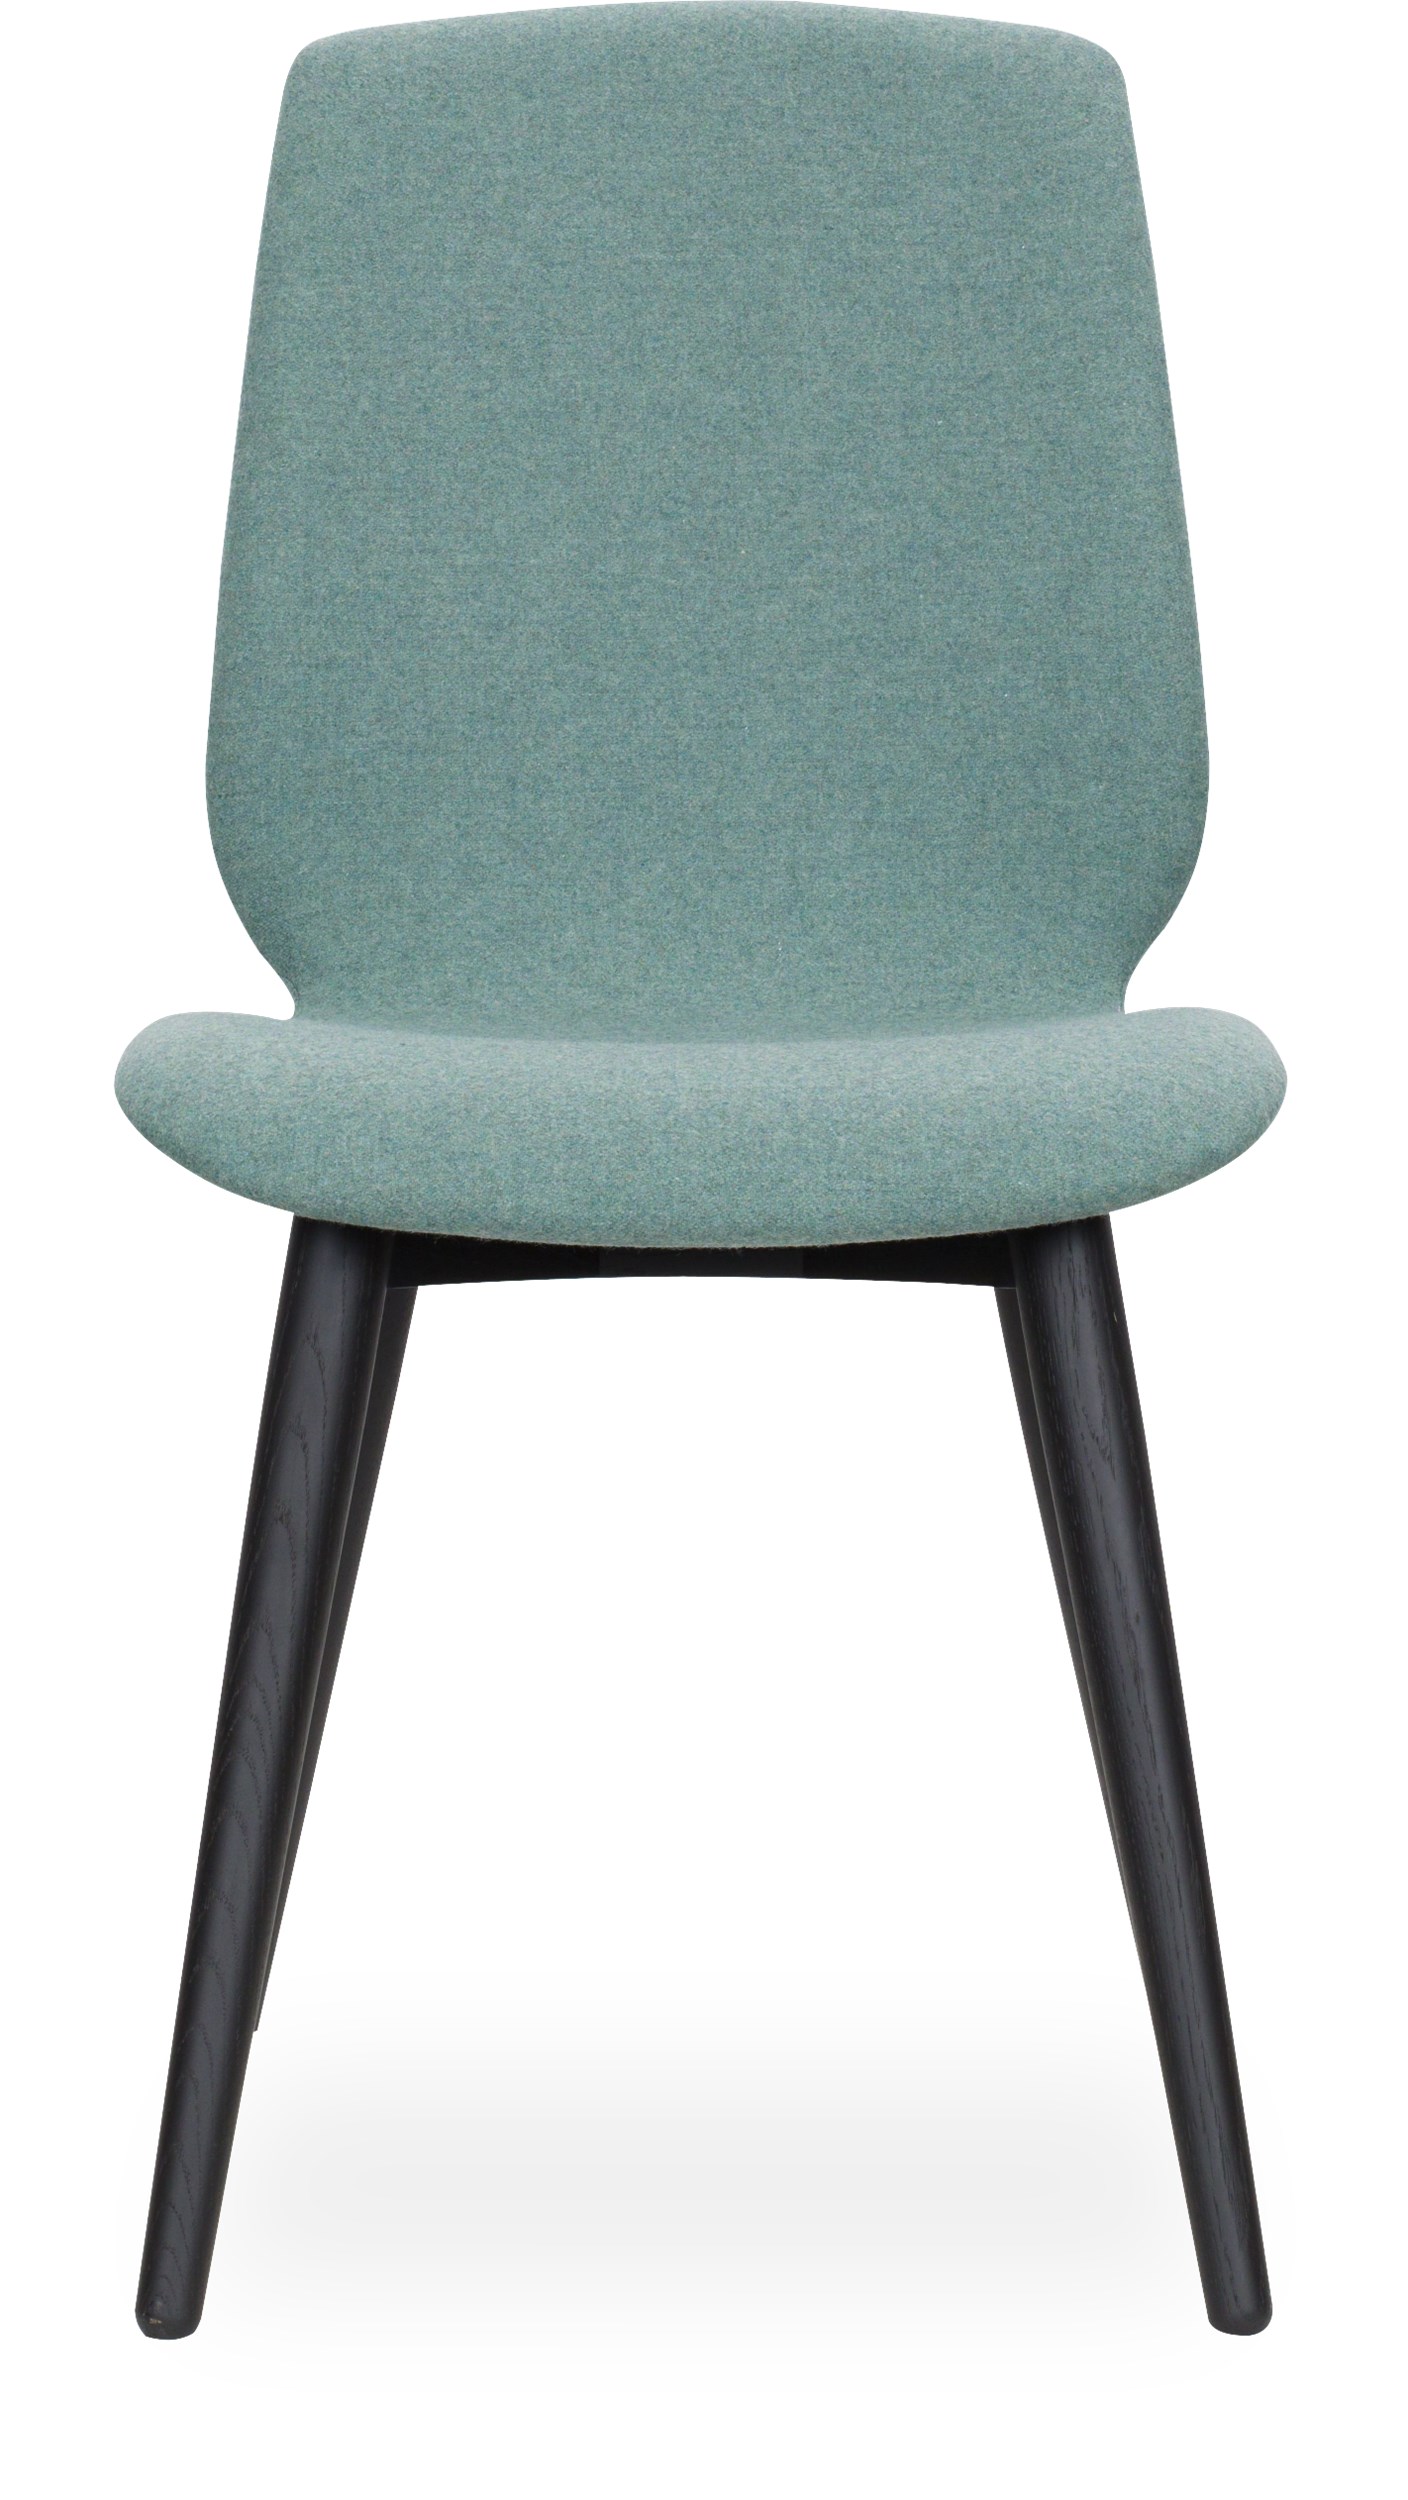 Share XL Curve matstol - Sits i 22 Dusty green filt och curveben i svartbetsad mattlackad ek